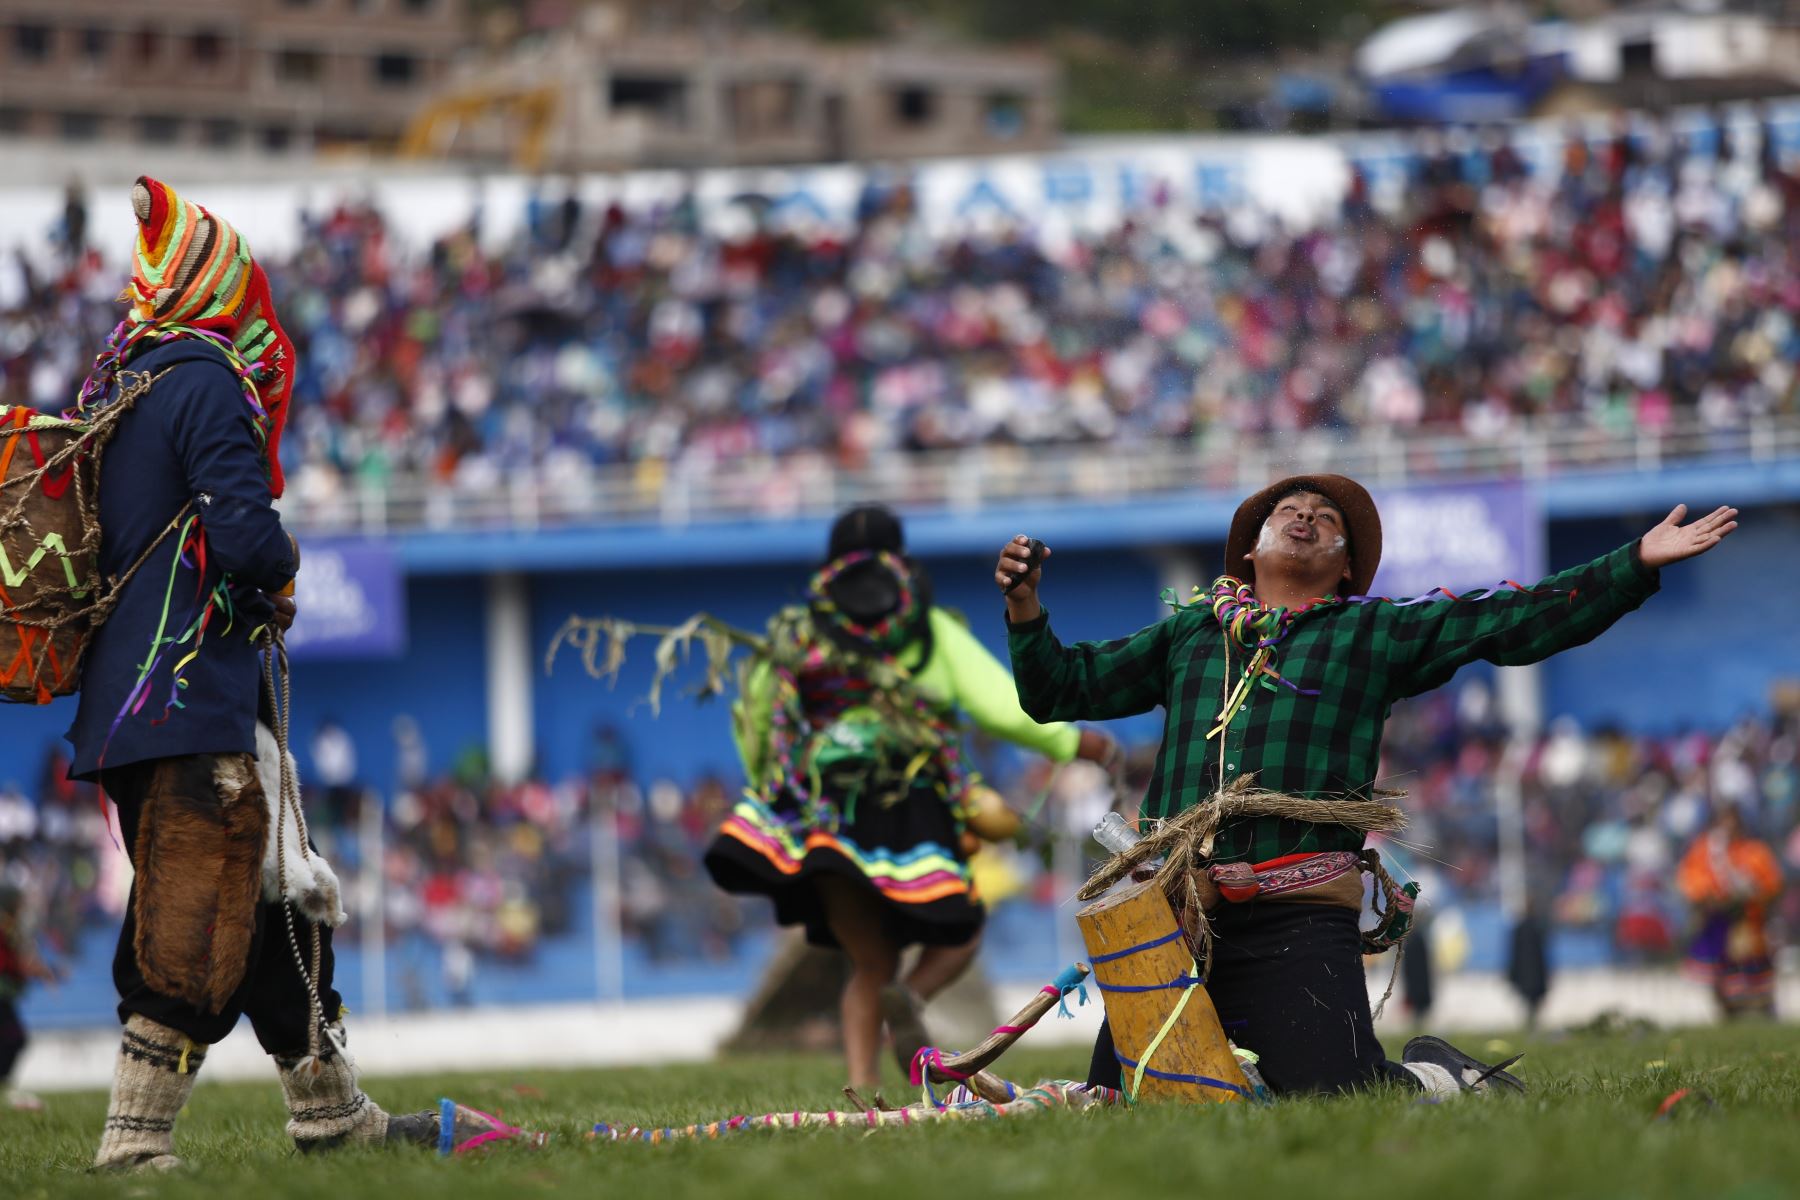 Las fechas centrales del Encuentro del Carnaval Originario del Perú o Pukllay se celebrarán entre el miércoles 7 y sábado 10 de marzo y durante esos días Andahuaylas vive un ambiente de jolgorio desbordante que cada año atrae a más visitantes que se suman a la fiesta. Foto: PROMPERÚ